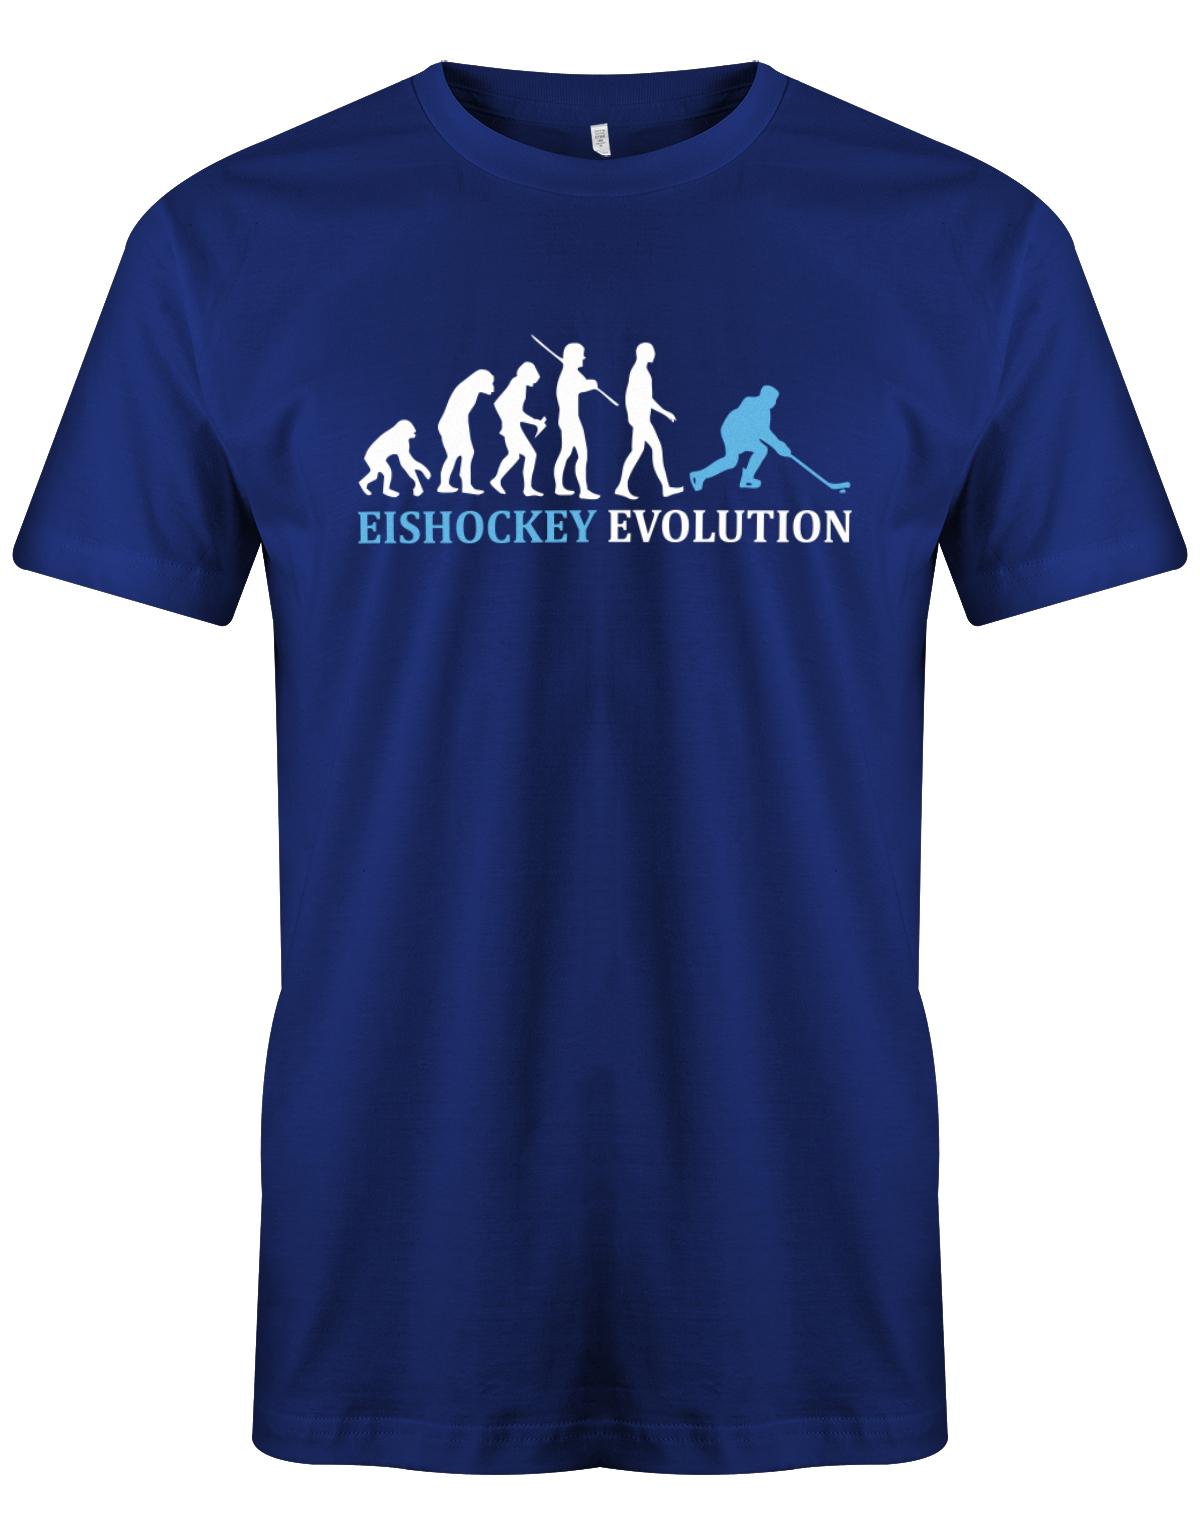 Eishockey-Evolution-Herren-Shirt-Royalblau